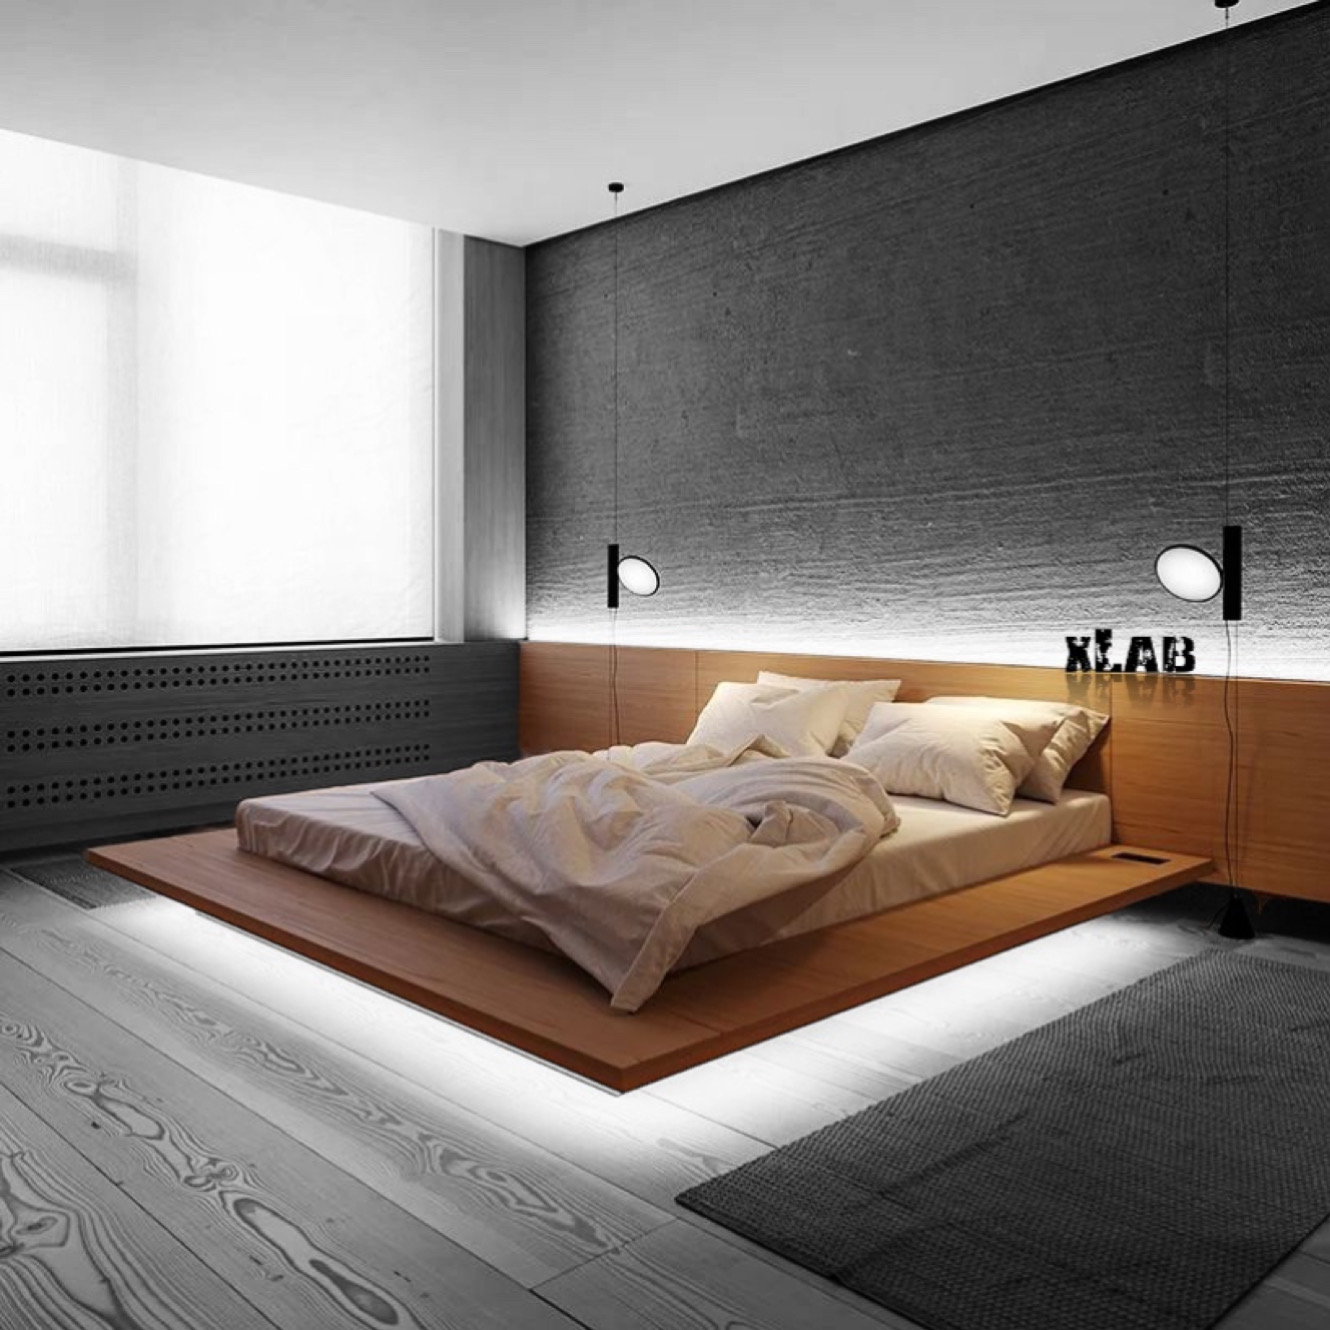 Letto Air: un letto moderno ed elegante